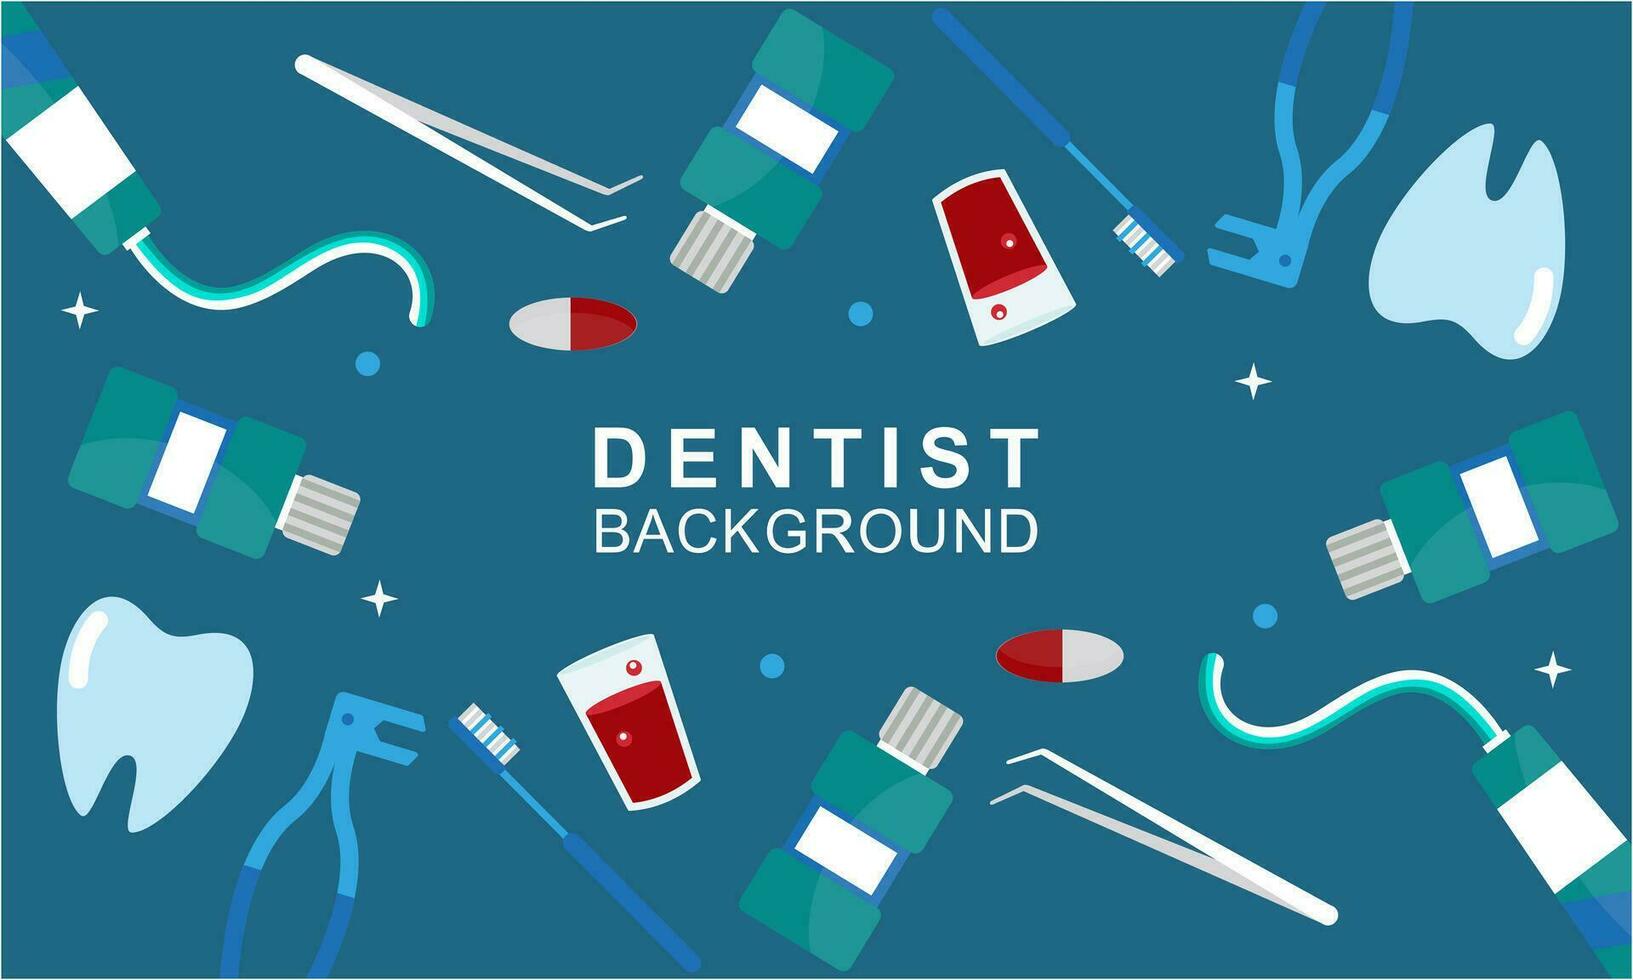 dentista utensili e attrezzatura bandiera concetto vettore